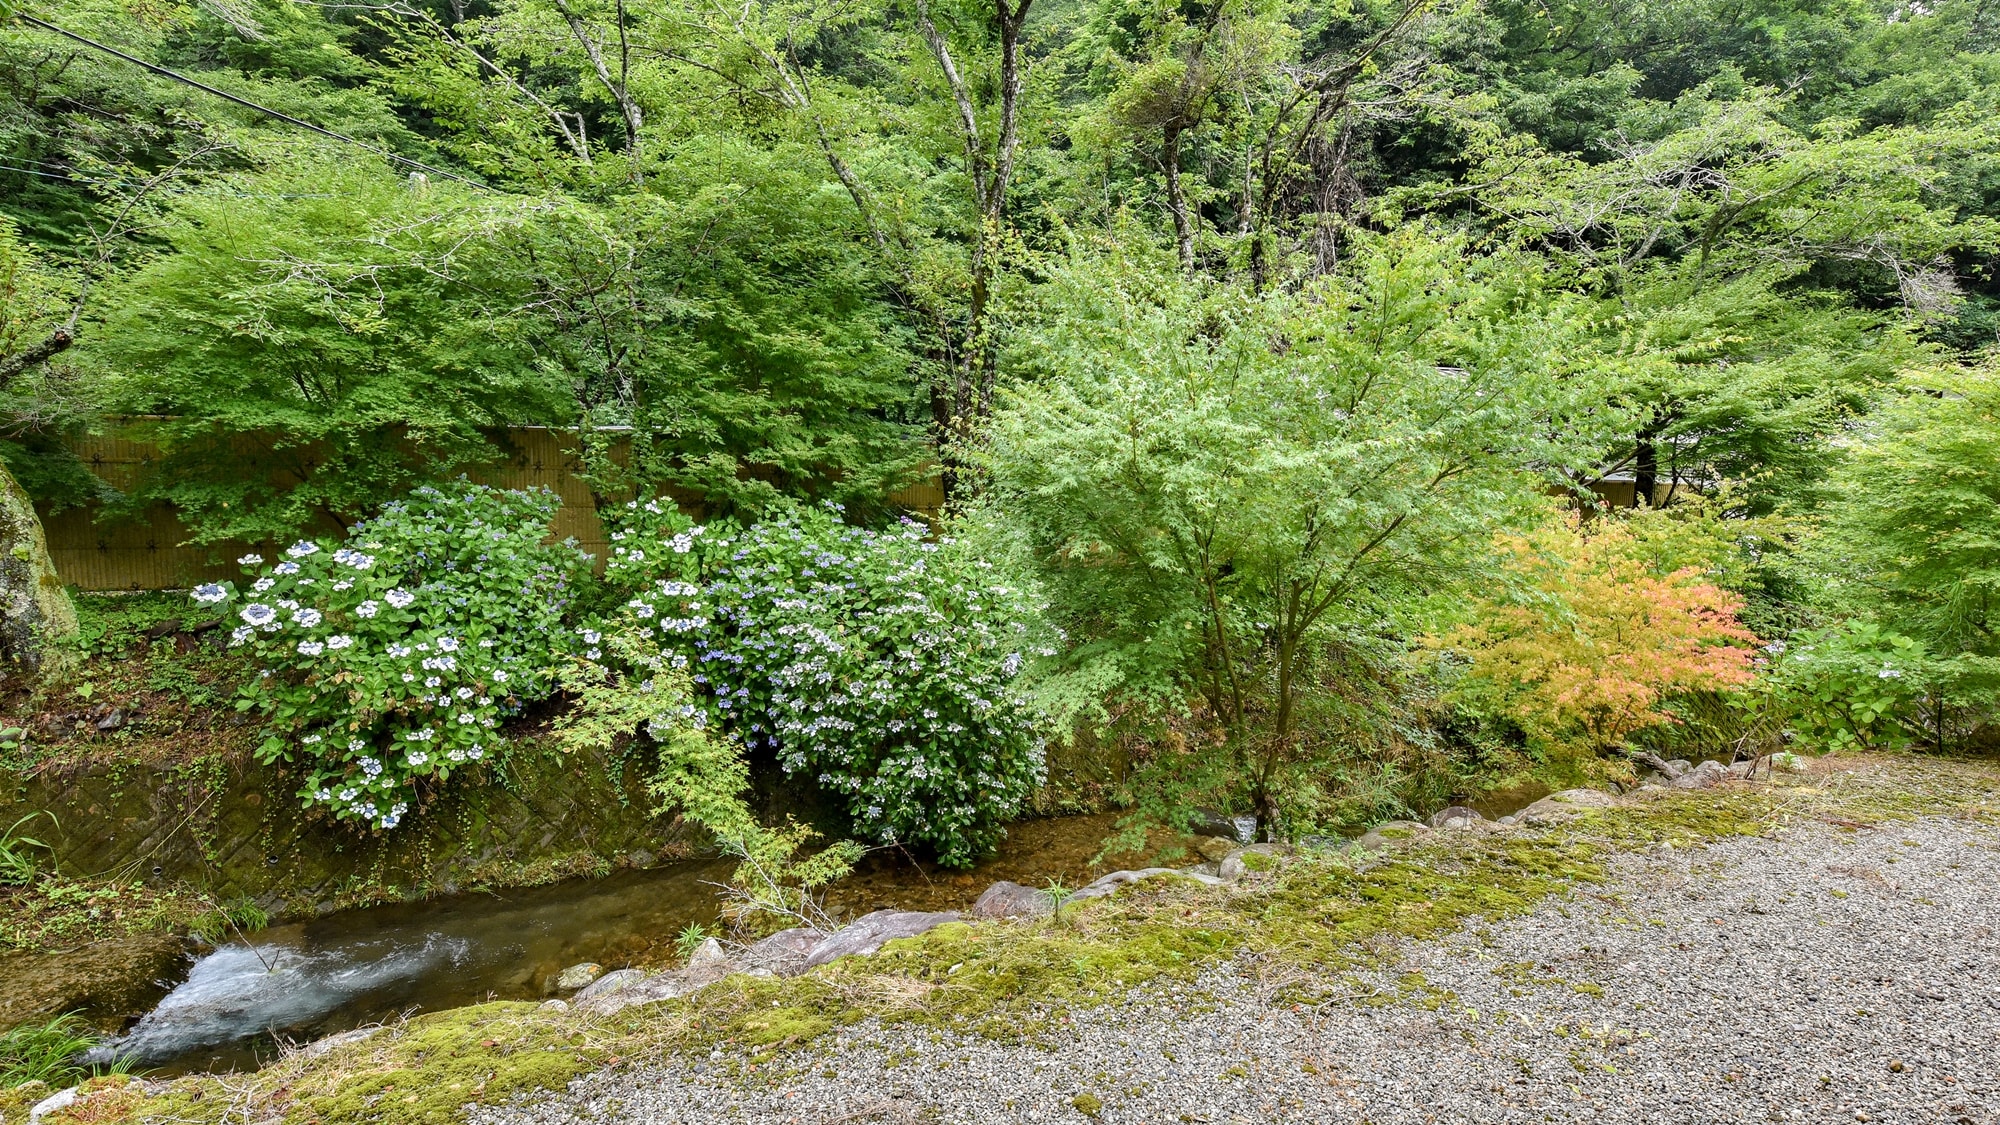 * ■ 日式房間的景色 10 張榻榻米 ■ 您可以看到豐富的綠色植物。